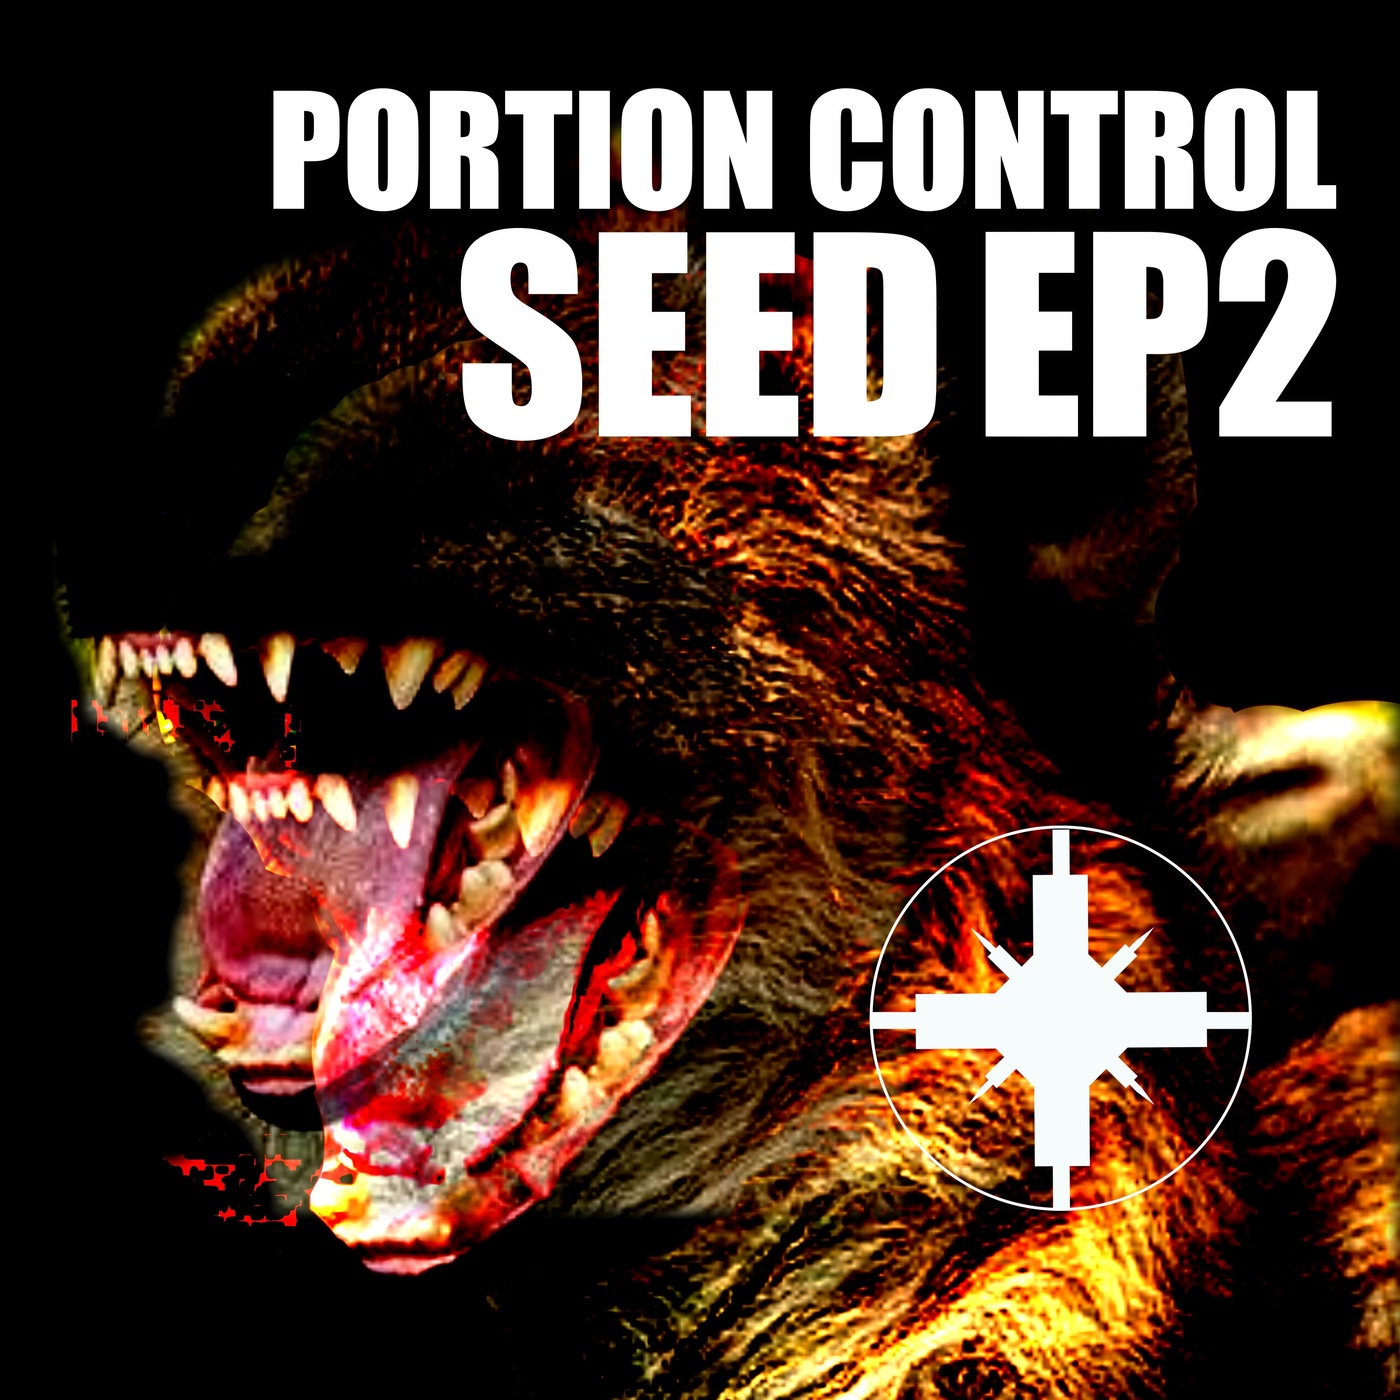 Portion Control - Seek - Portion Control - Seek